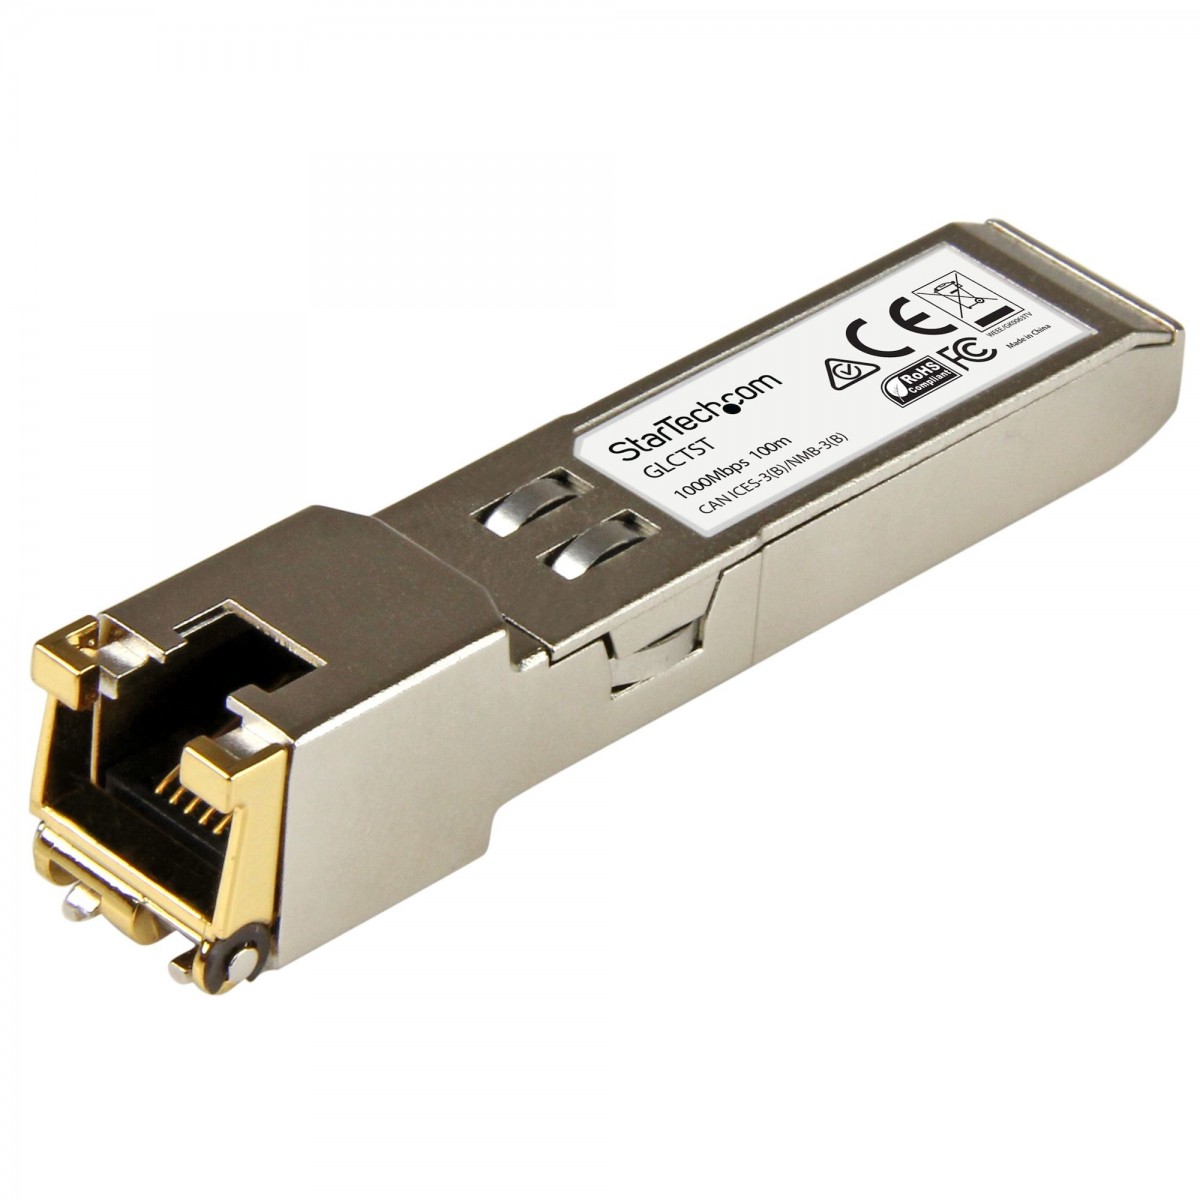 StarTech.com Cisco GLC-T Compatible SFP Transceiver Module - 1000BASE-T - 10 Pack - Copper - 1000 Mbit/s - SFP - 100 m - Gigabit